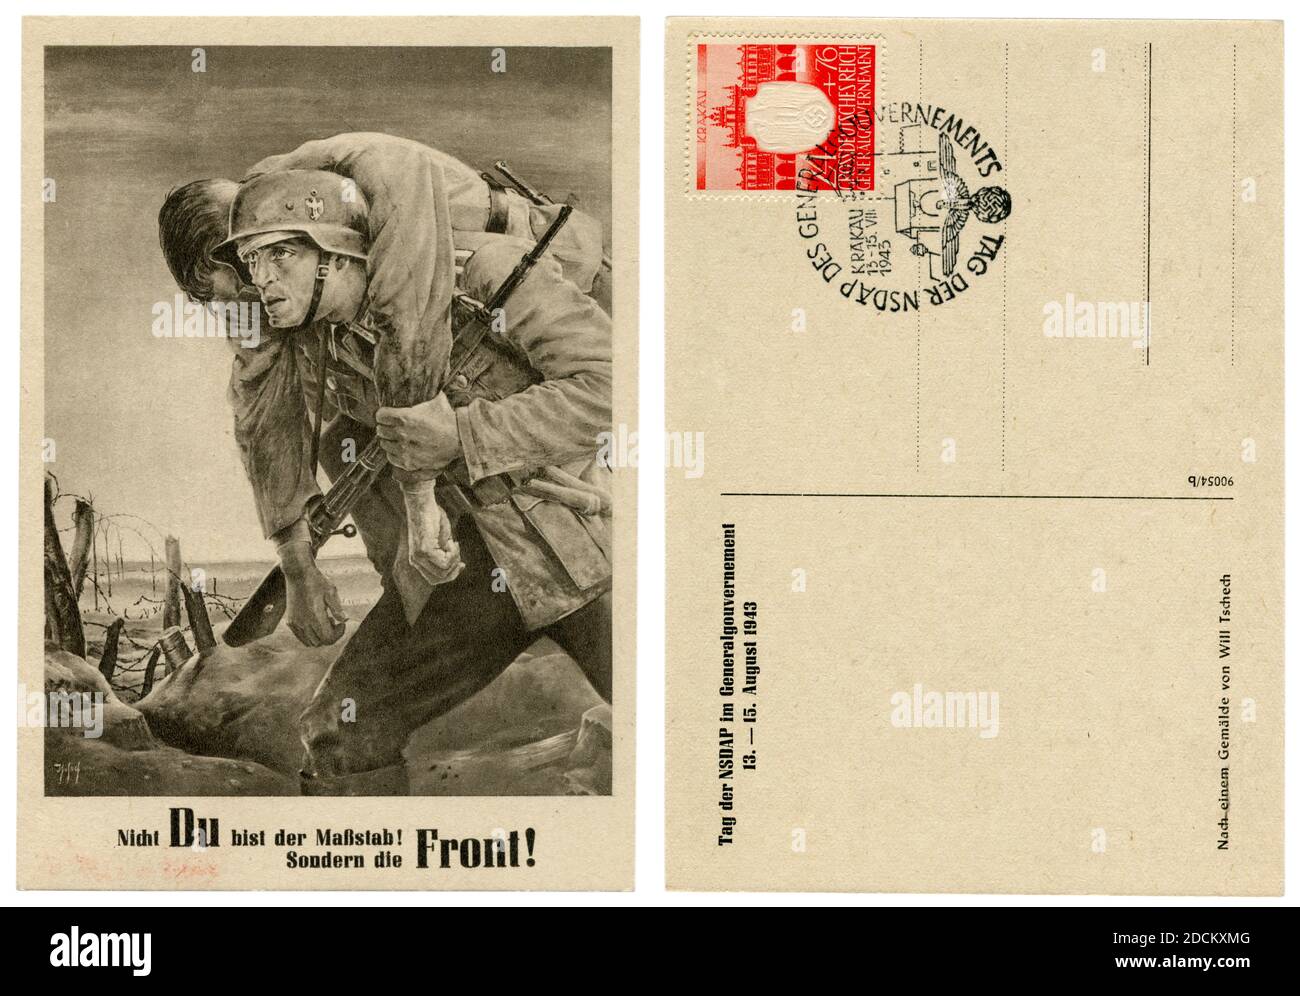 Deutsche historische Postkarte: 'Kameraden'. Der Soldat an der Front trägt einen verwundeten Kameraden. Künstler Will Tschech, 1943, Deutschland, Drittes Reich Stockfoto